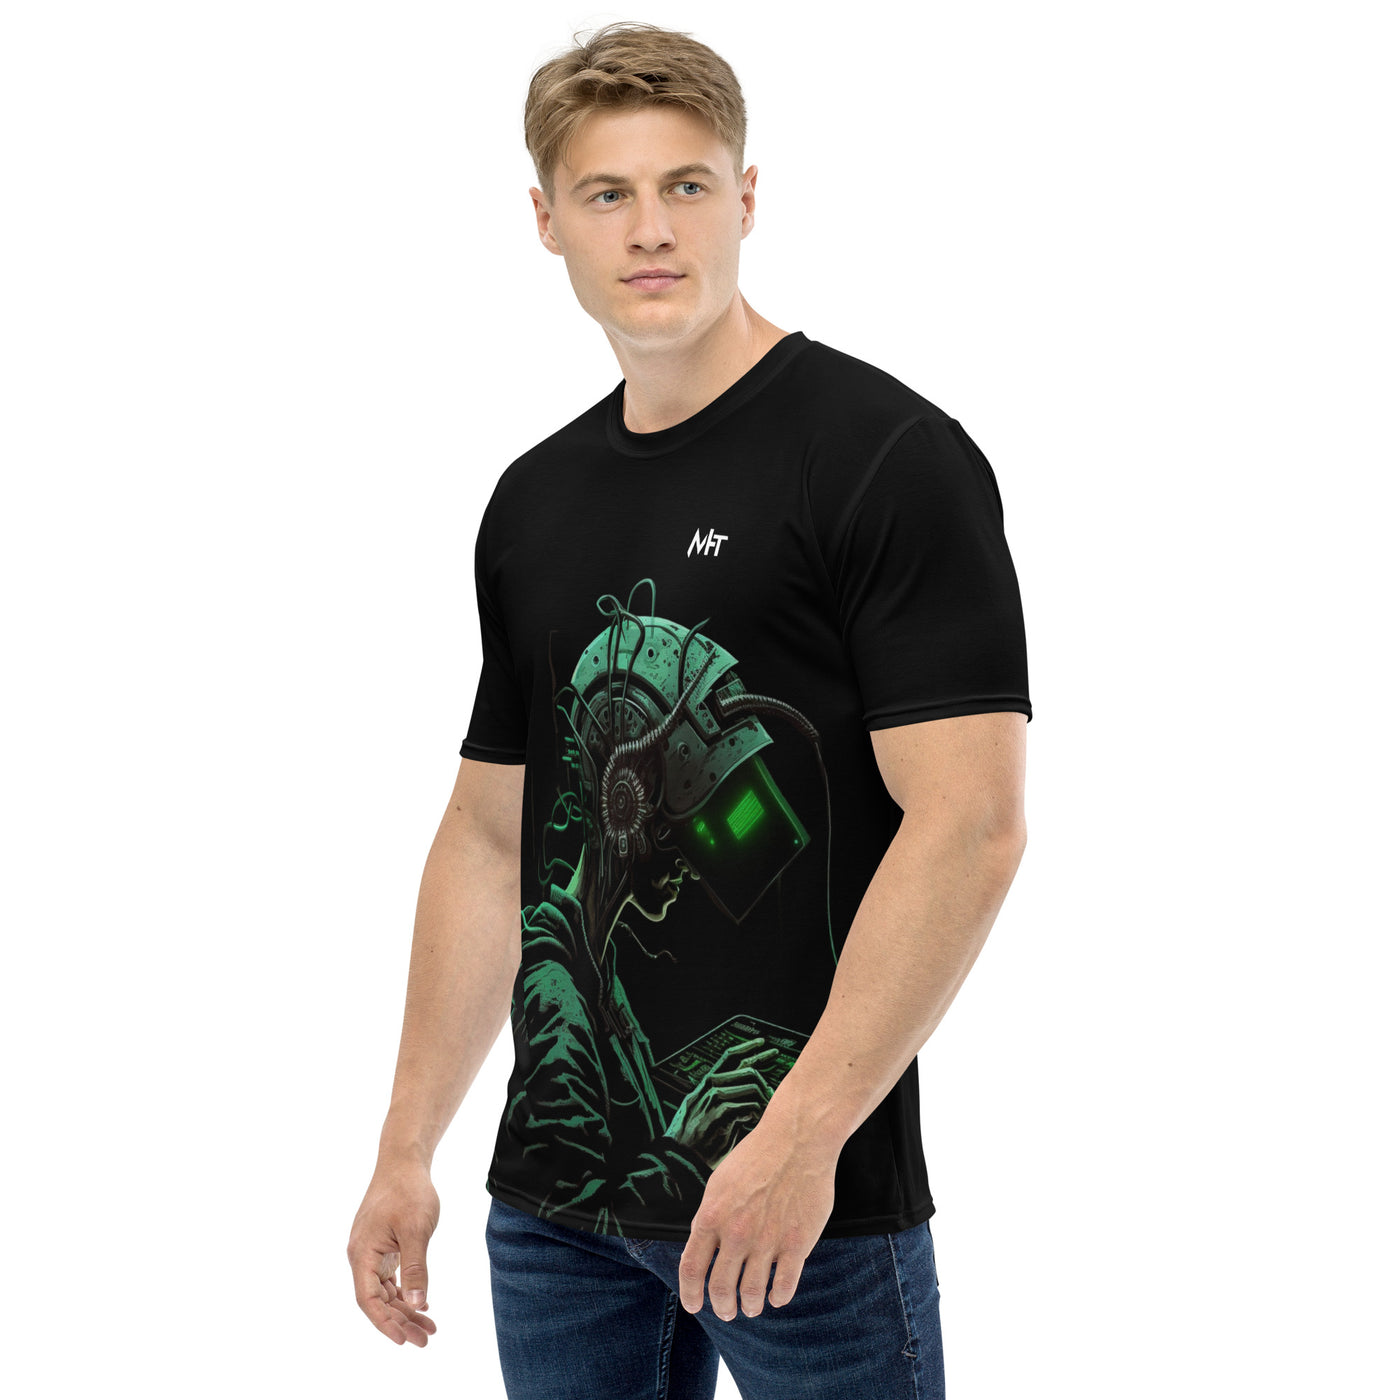 Cyberware assassin v8 - Men's t-shirt